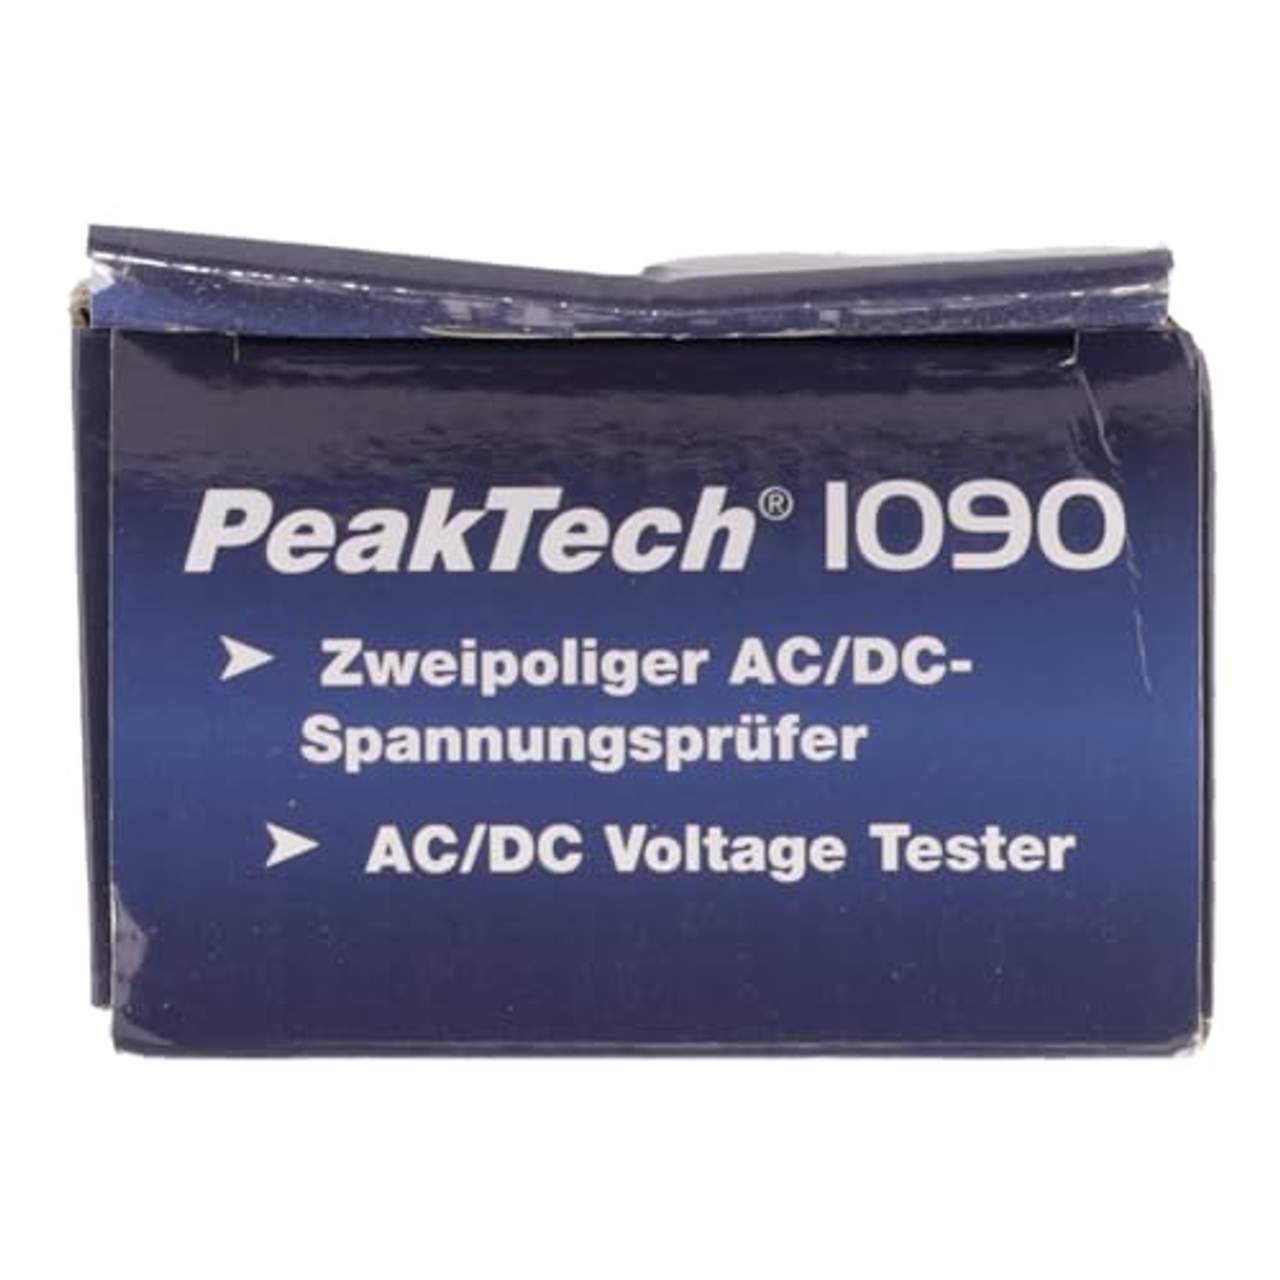 PeakTech 1090 2-Poliger AC DC Spannungsprüfer